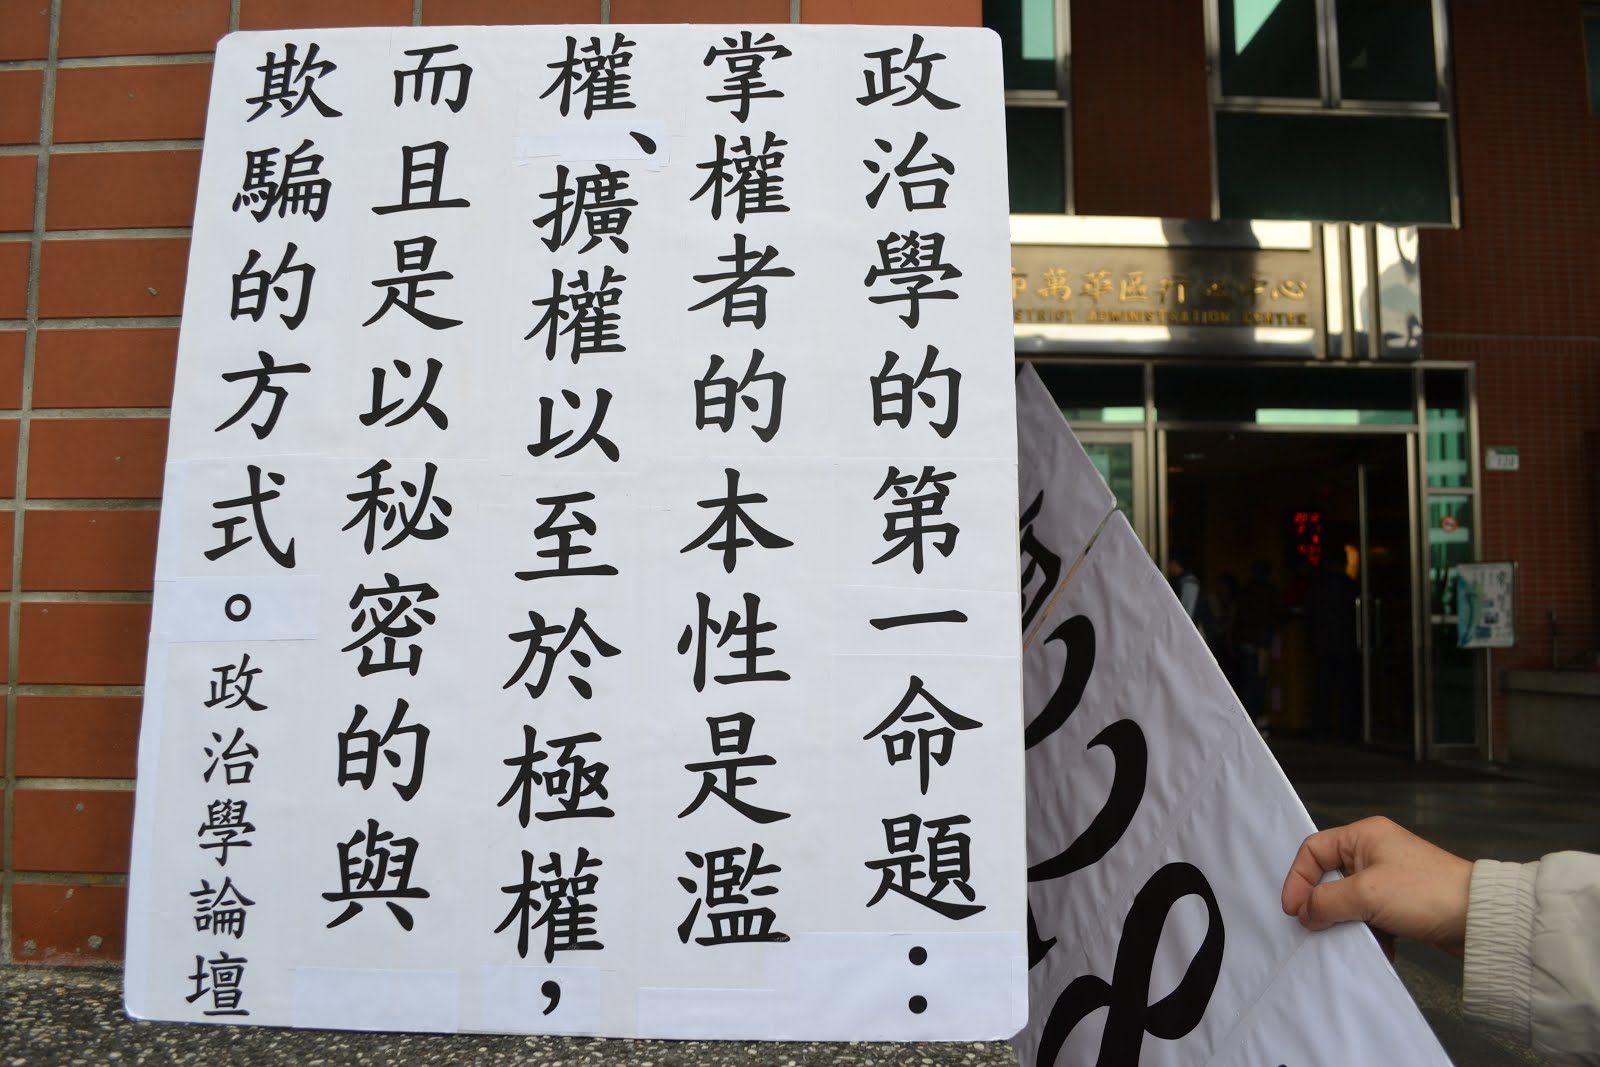 陳立民 Chen Lih Ming (陳哲) 下張為創作之「政治學的第一原理」或「政治學的第一命題」或「政治學的起點」。20120203 攝於台北市萬華區行政中心門口。